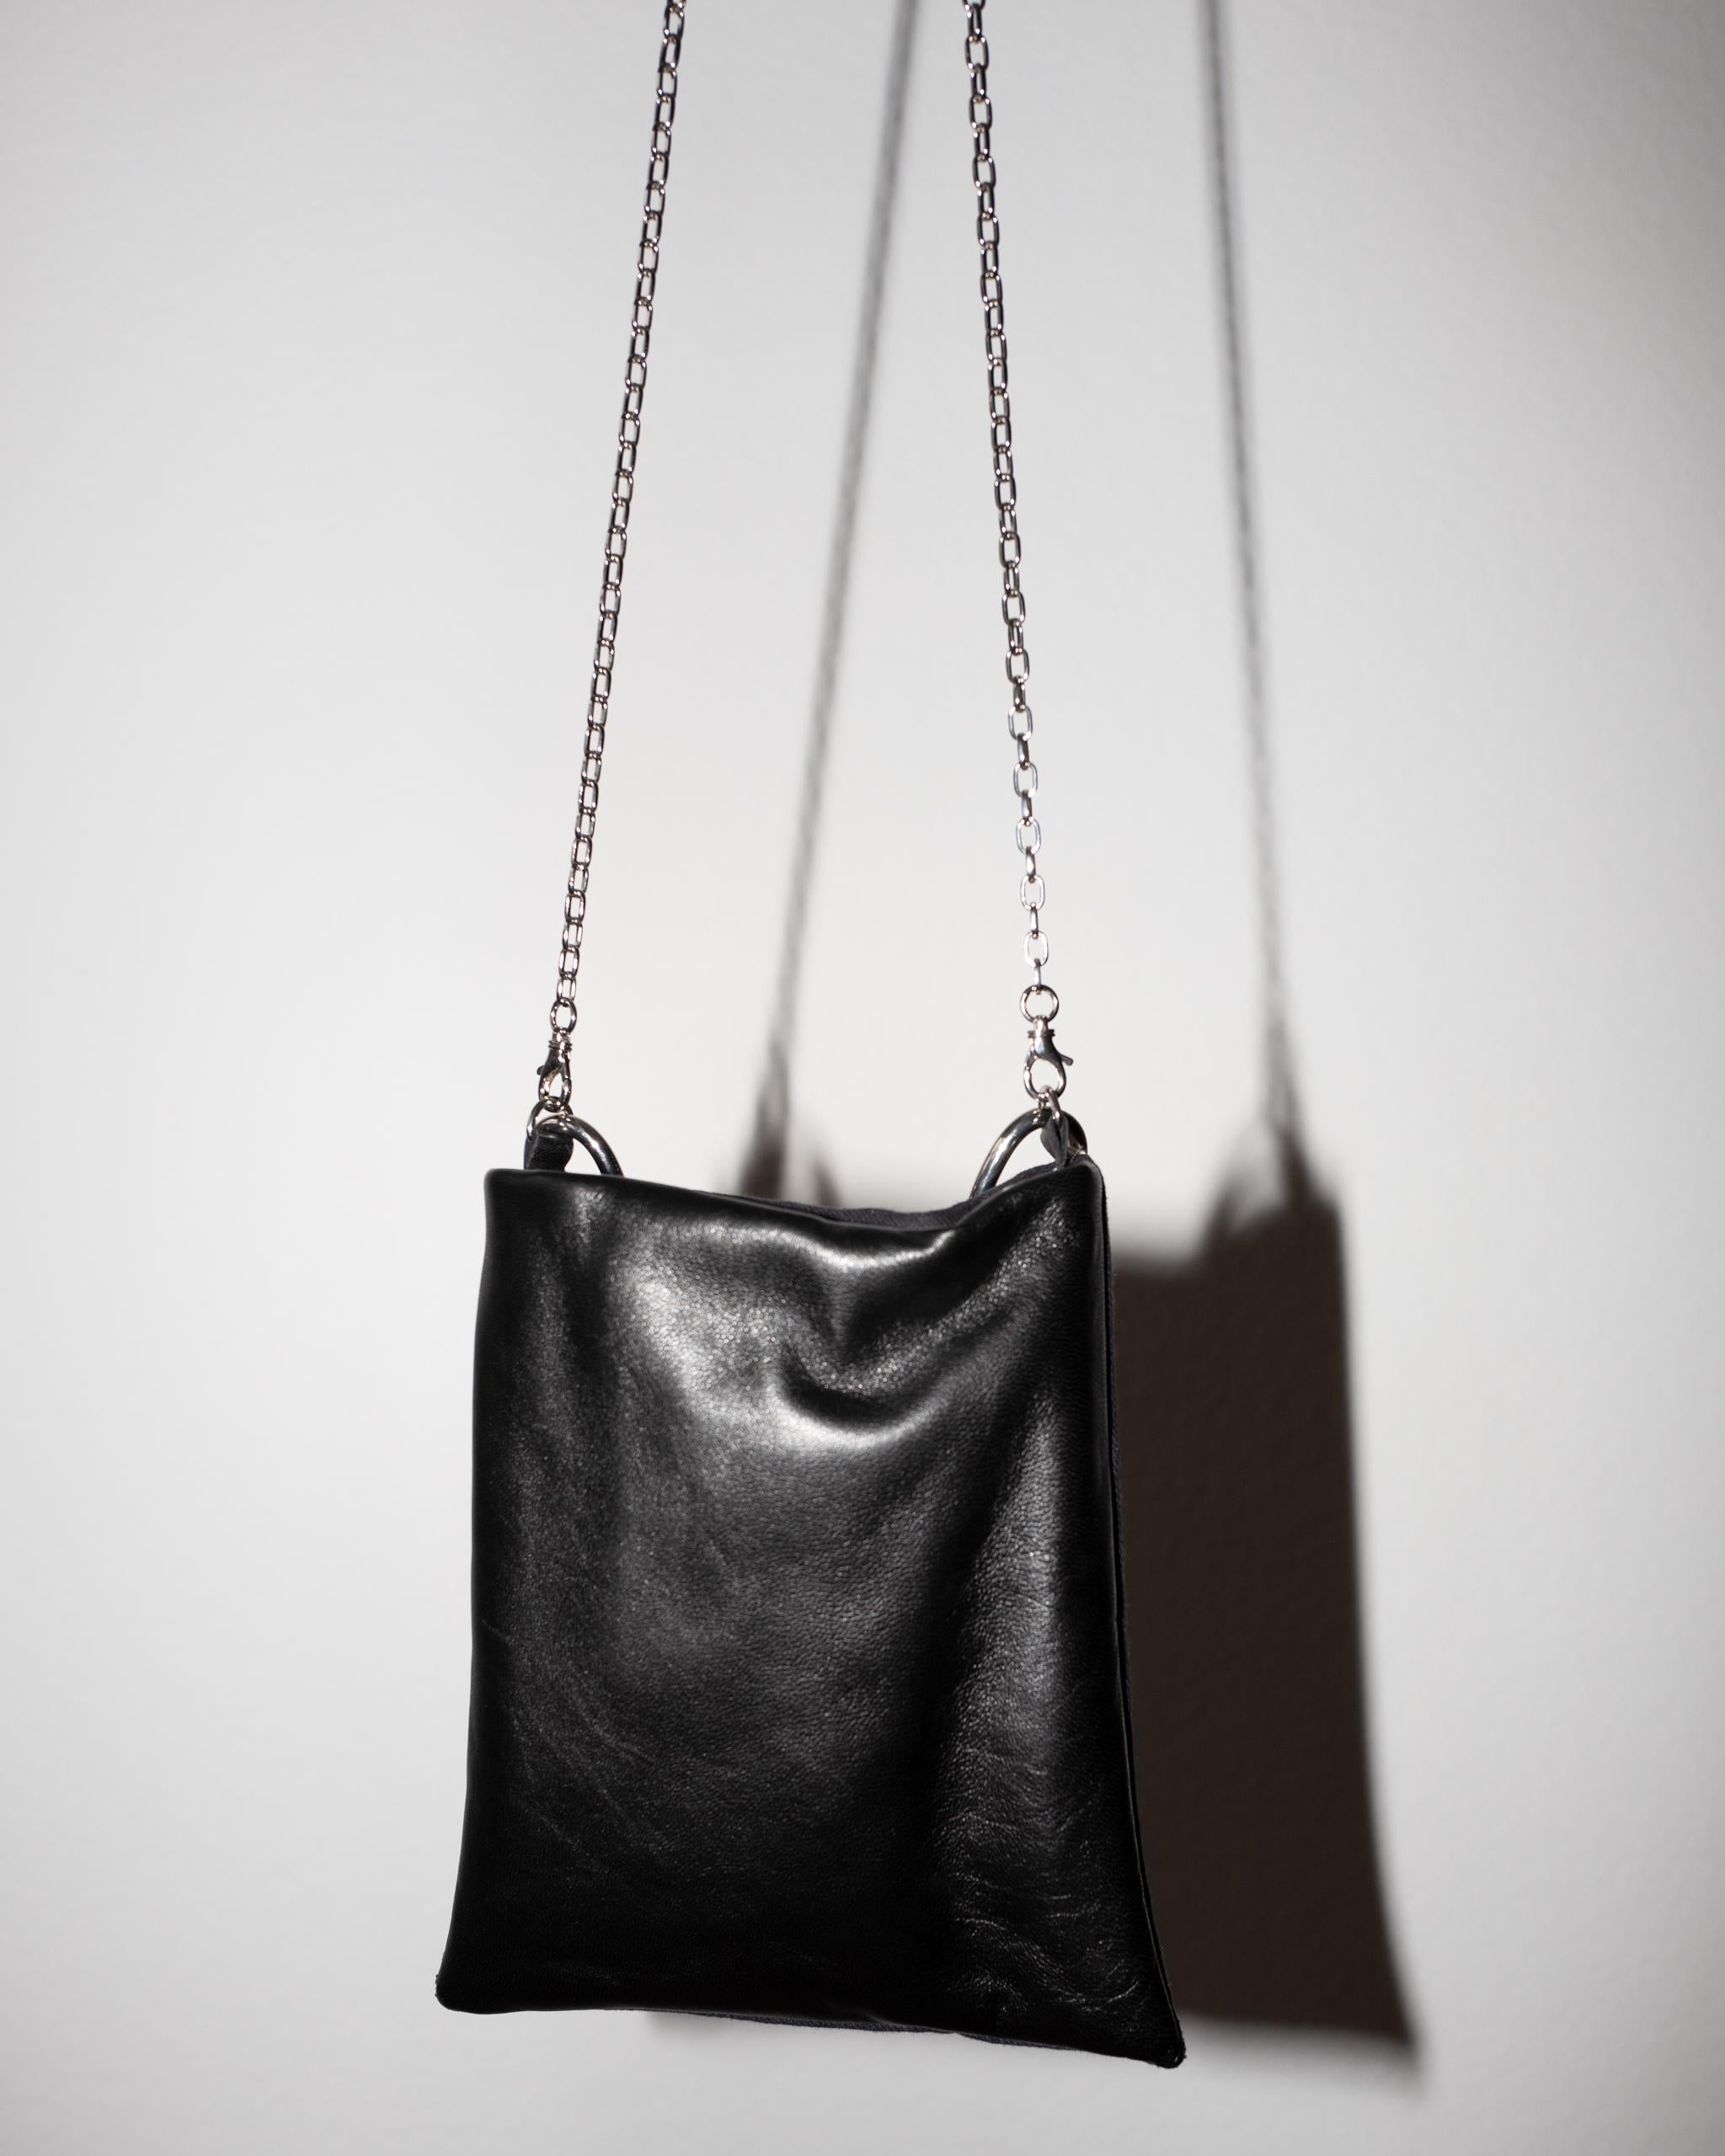 Crystal Star Embellished Black Evening Shoulder Bag Black Leather Chunky Chain For Sale 4